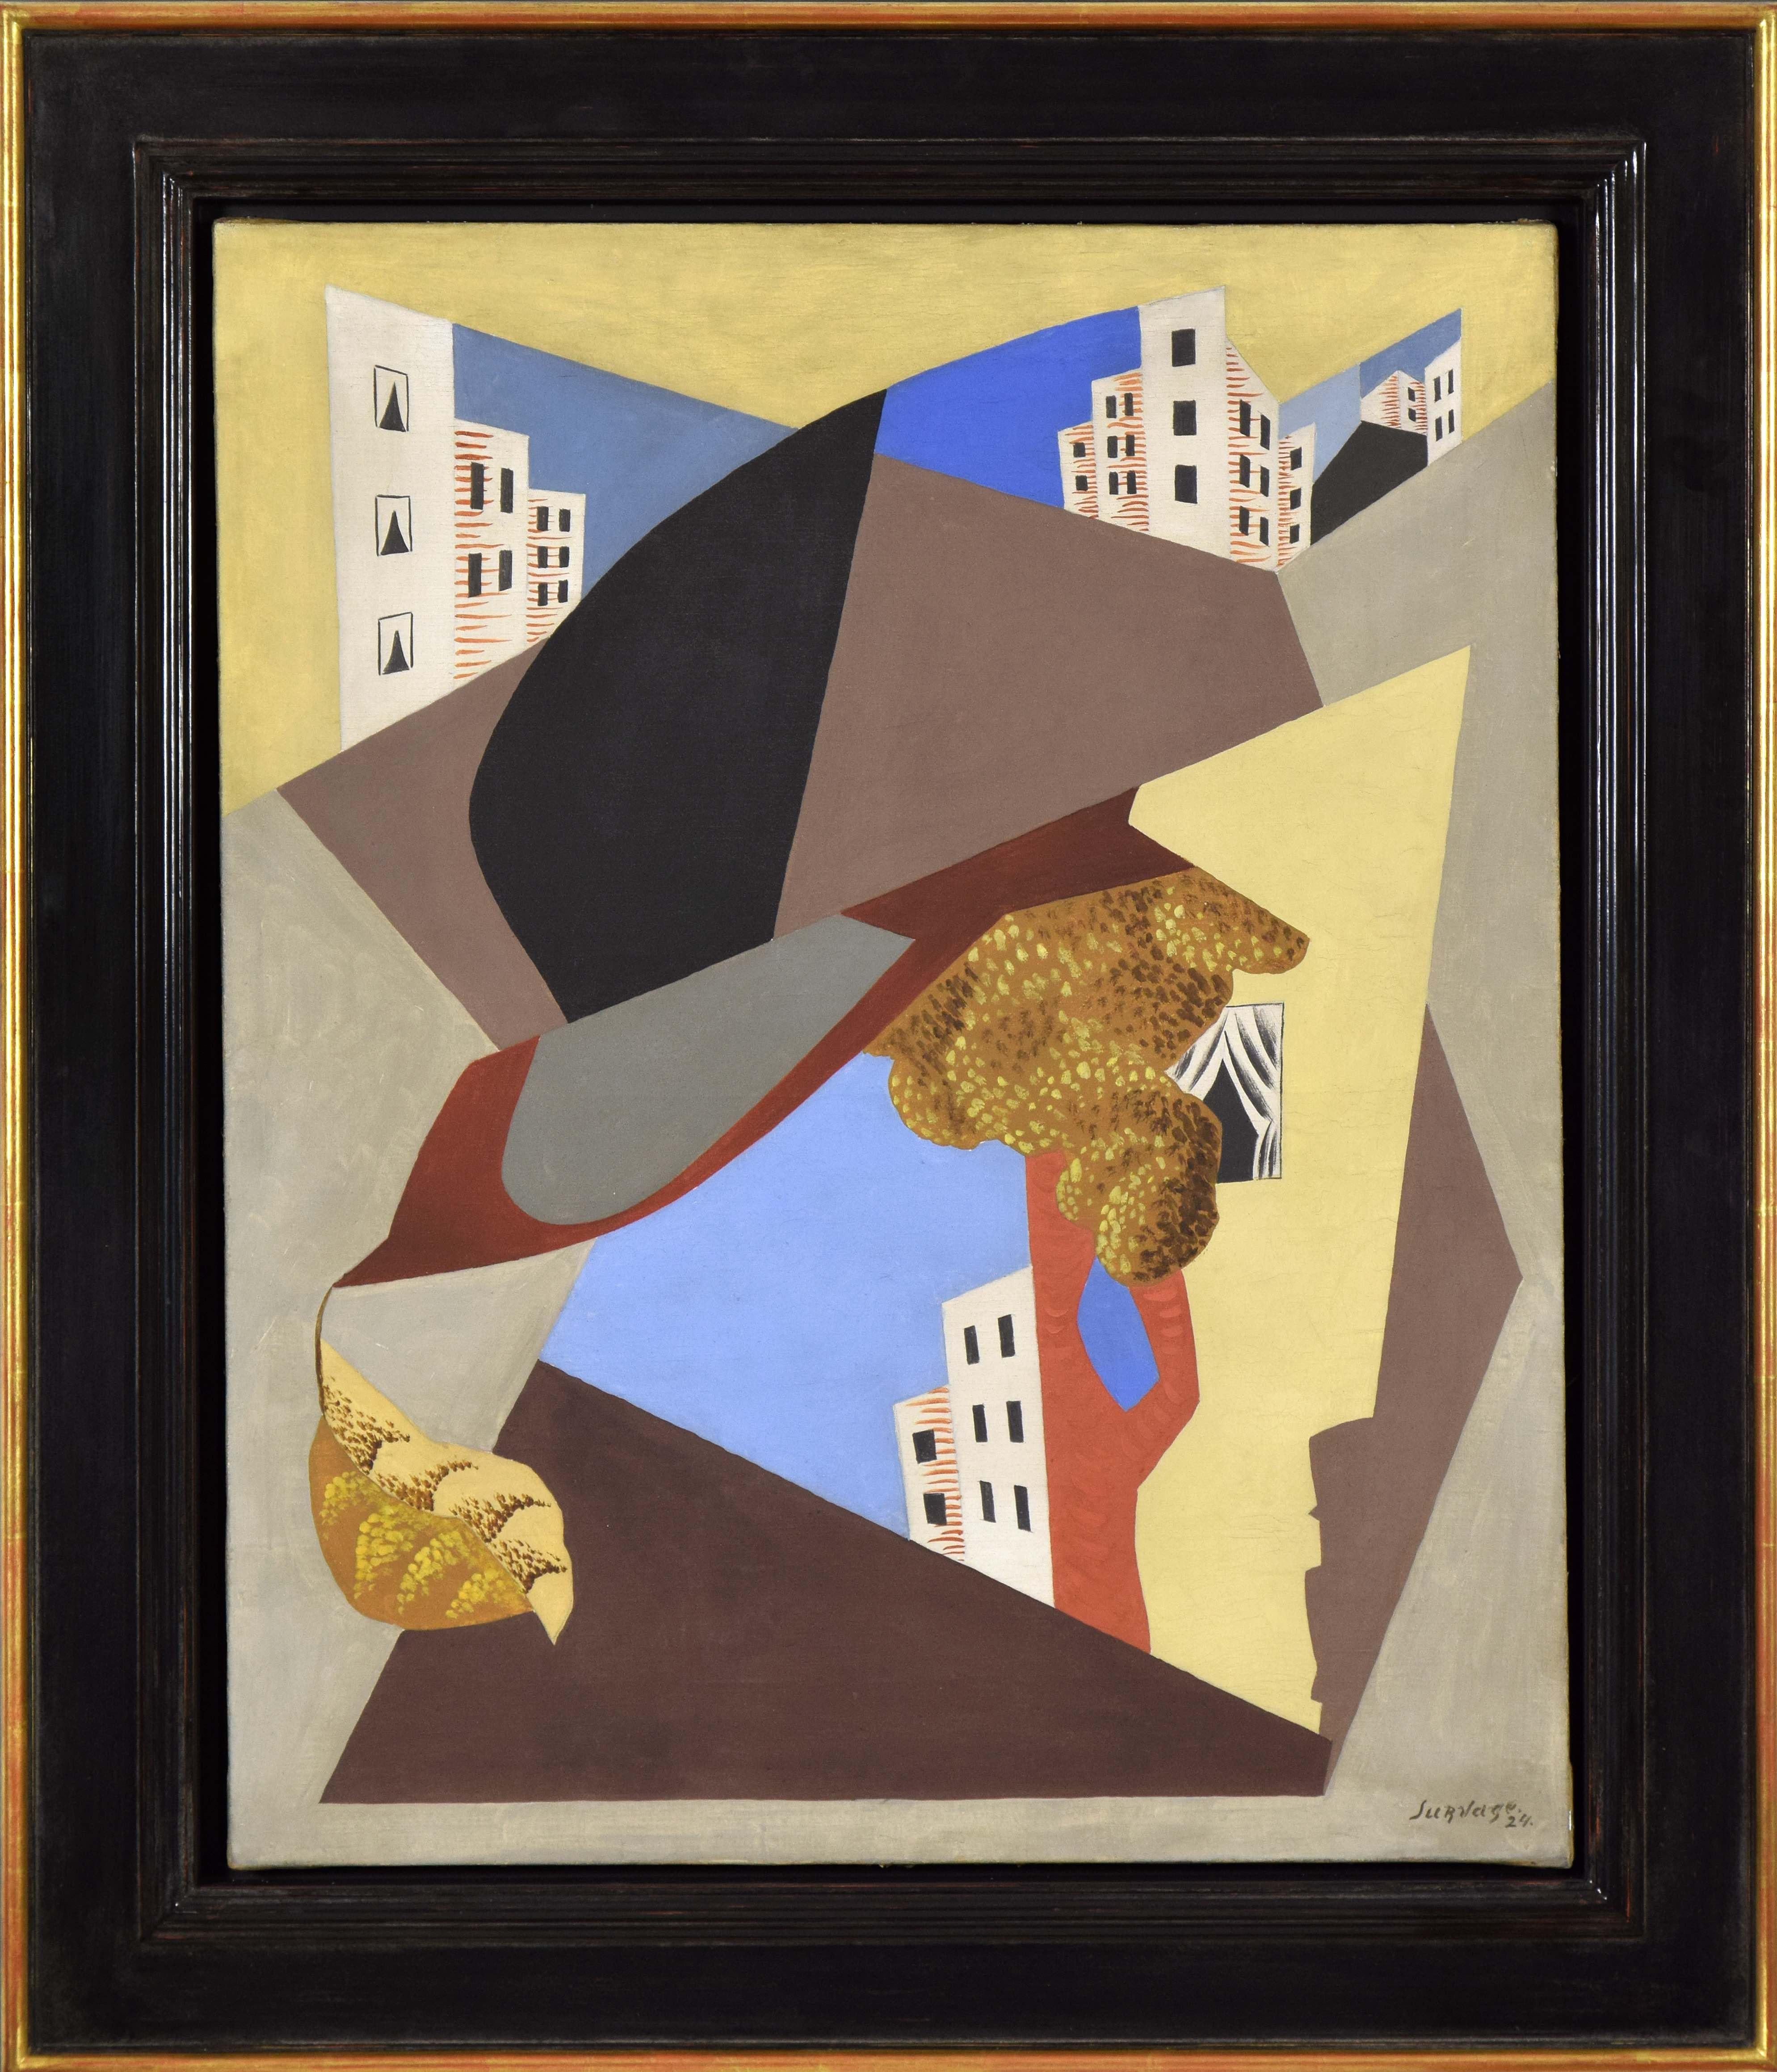 Ville von LÉOPOLD SURVAGE - Kunst, farbenfrohes kubistisches Ölgemälde eines modernen Meisters – Painting von Léopold Survage